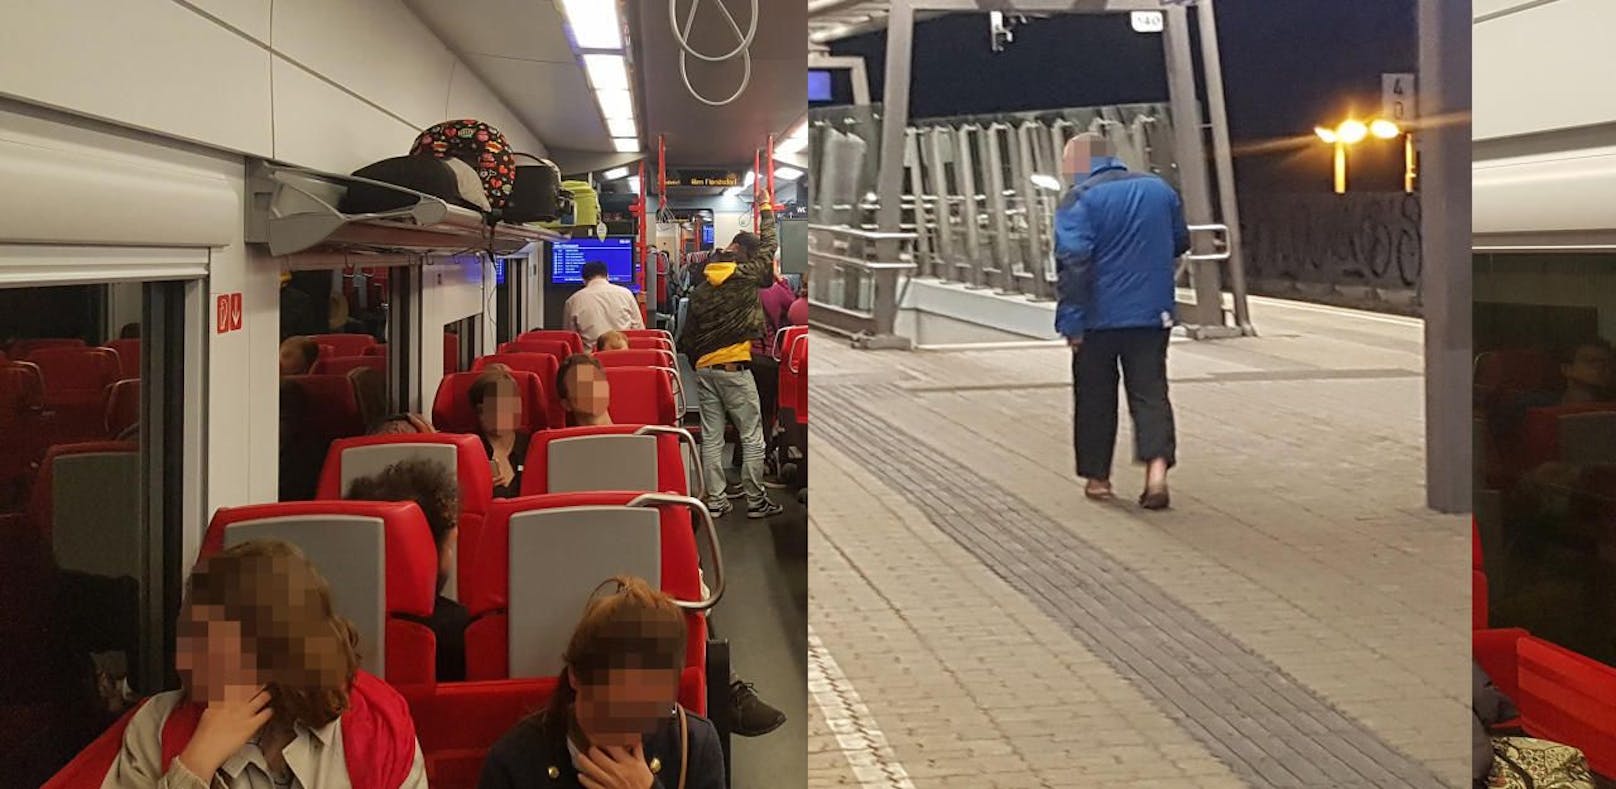 Fahrgäste zeigten sich empört über rassistische Rülpser von Passagier (r. blaue Jacke kurz nach dem Aussteigen).